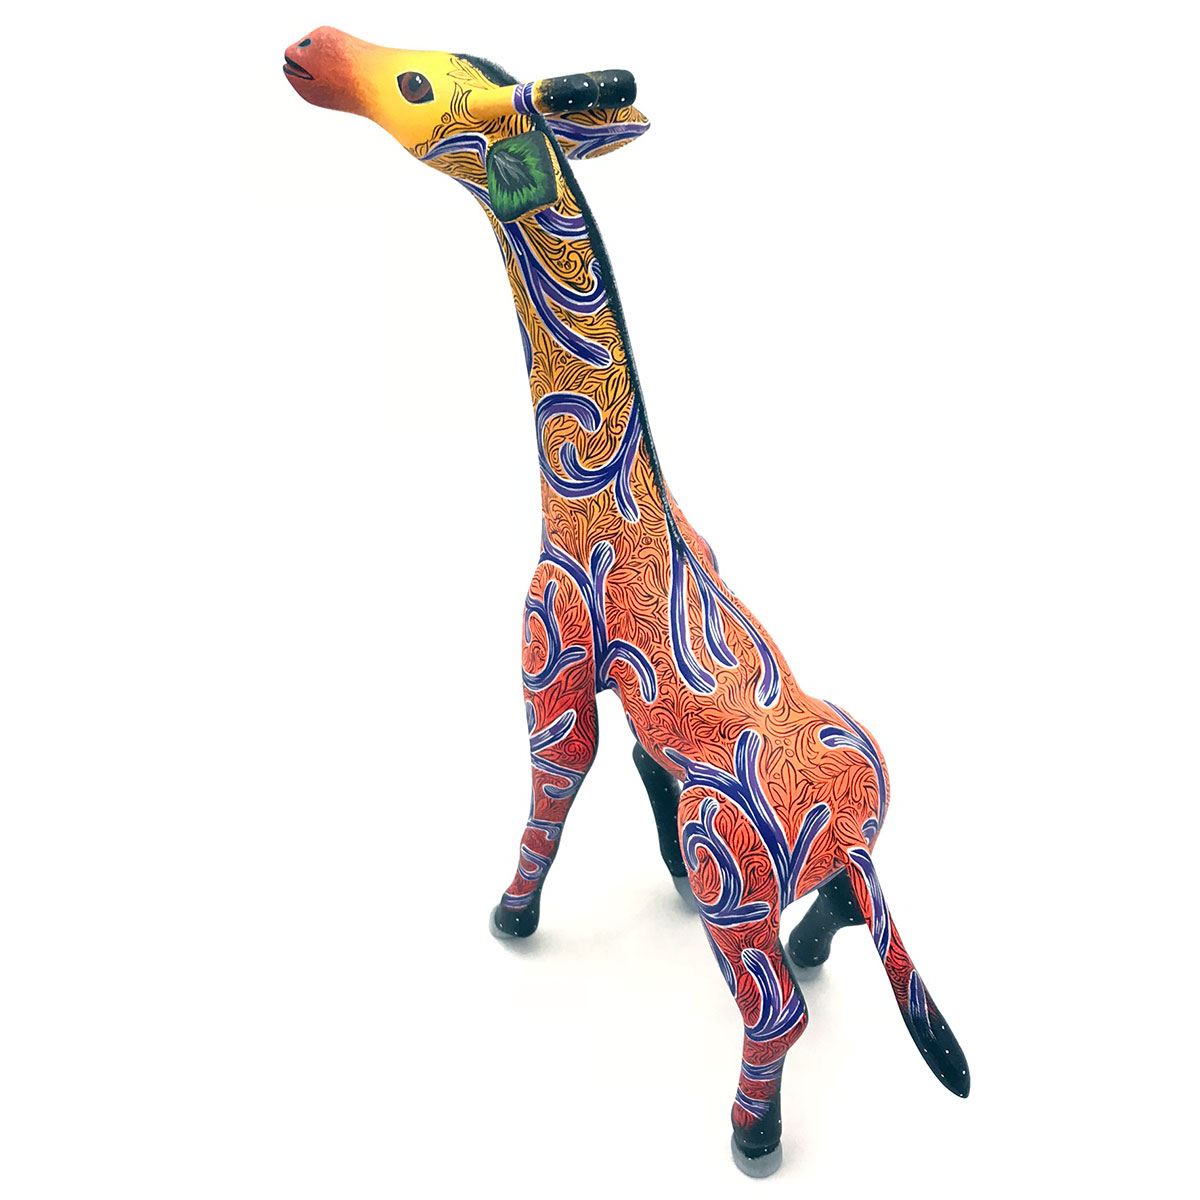 Giovanni Melchor: Giraffe | CulturalArt.org